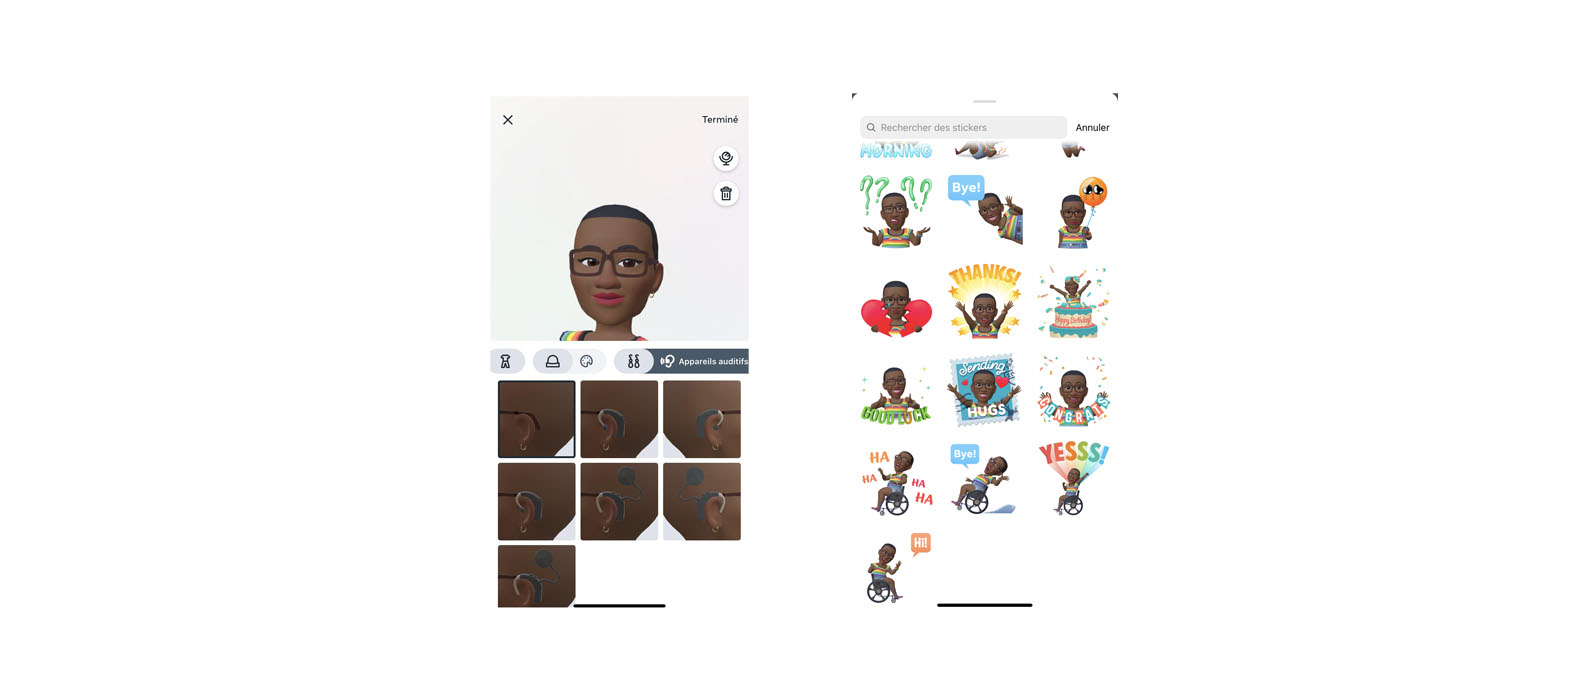 Options de personnalisation de l’avatar proposé par Instagram.